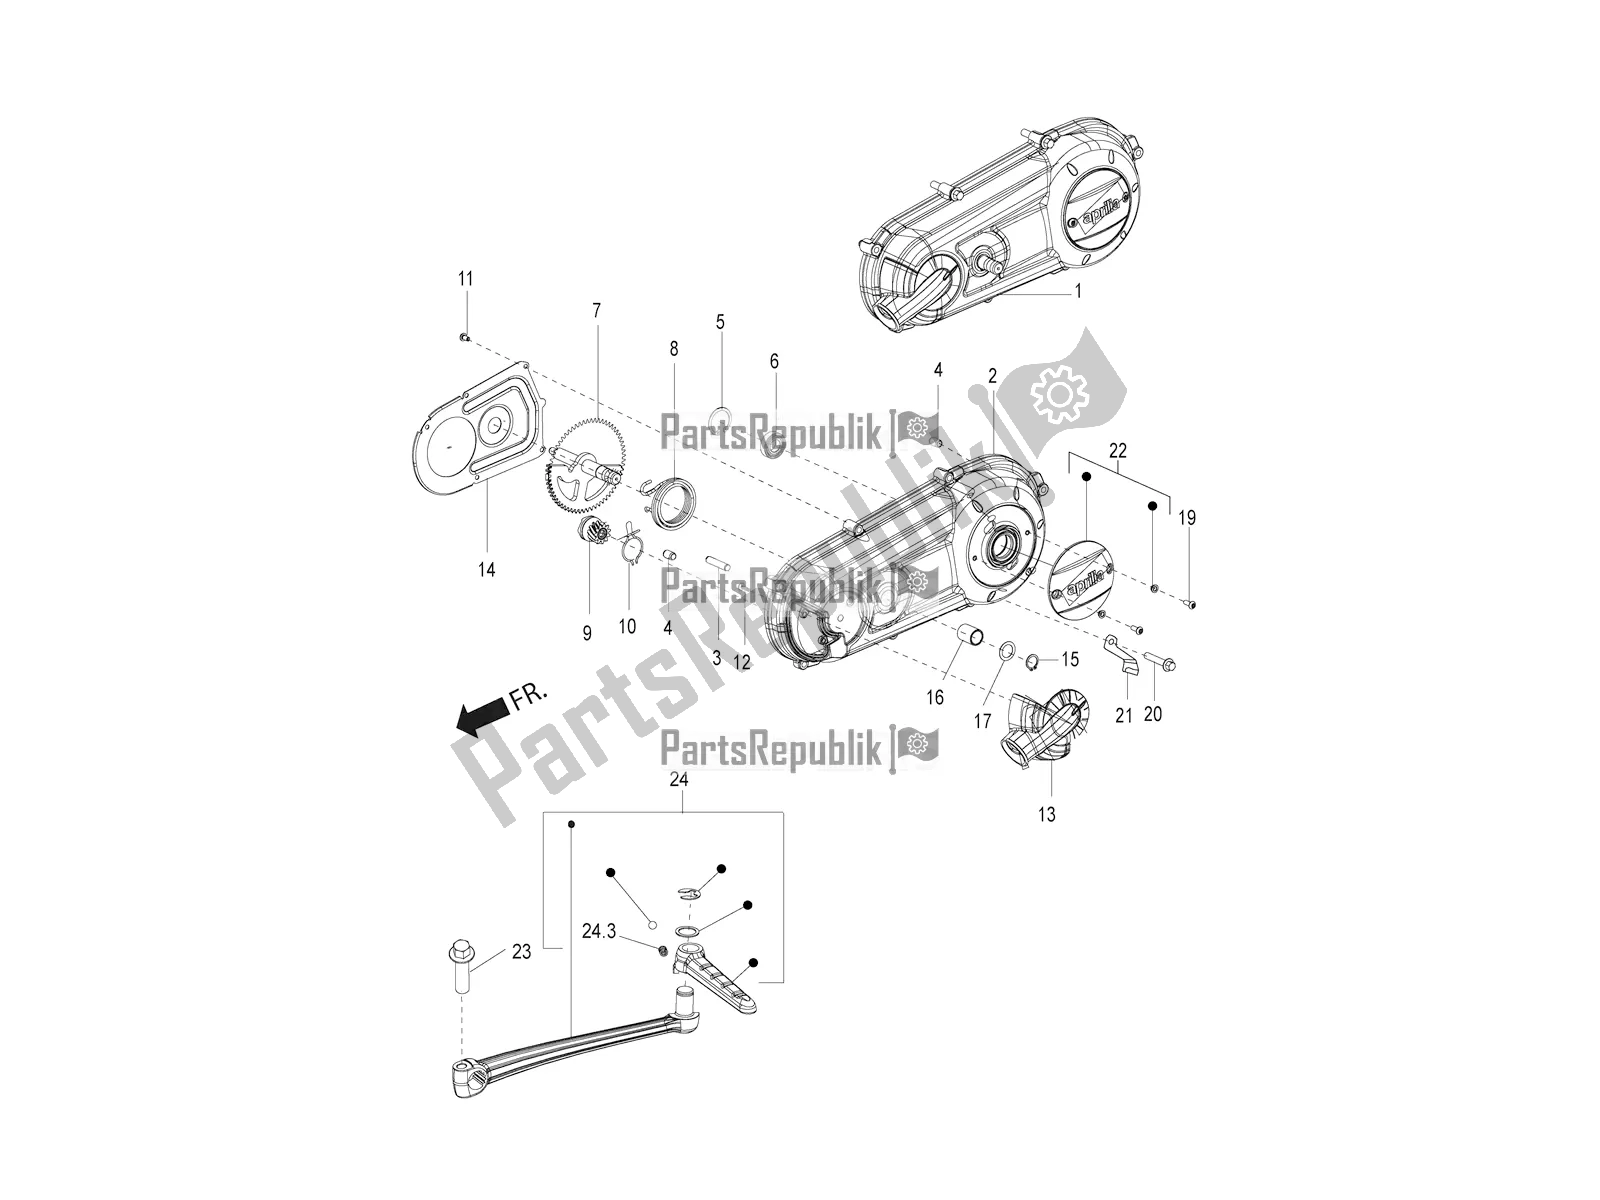 Toutes les pièces pour le Couvercle De Transmission du Aprilia SR Motard 150 ABS Apac 2021